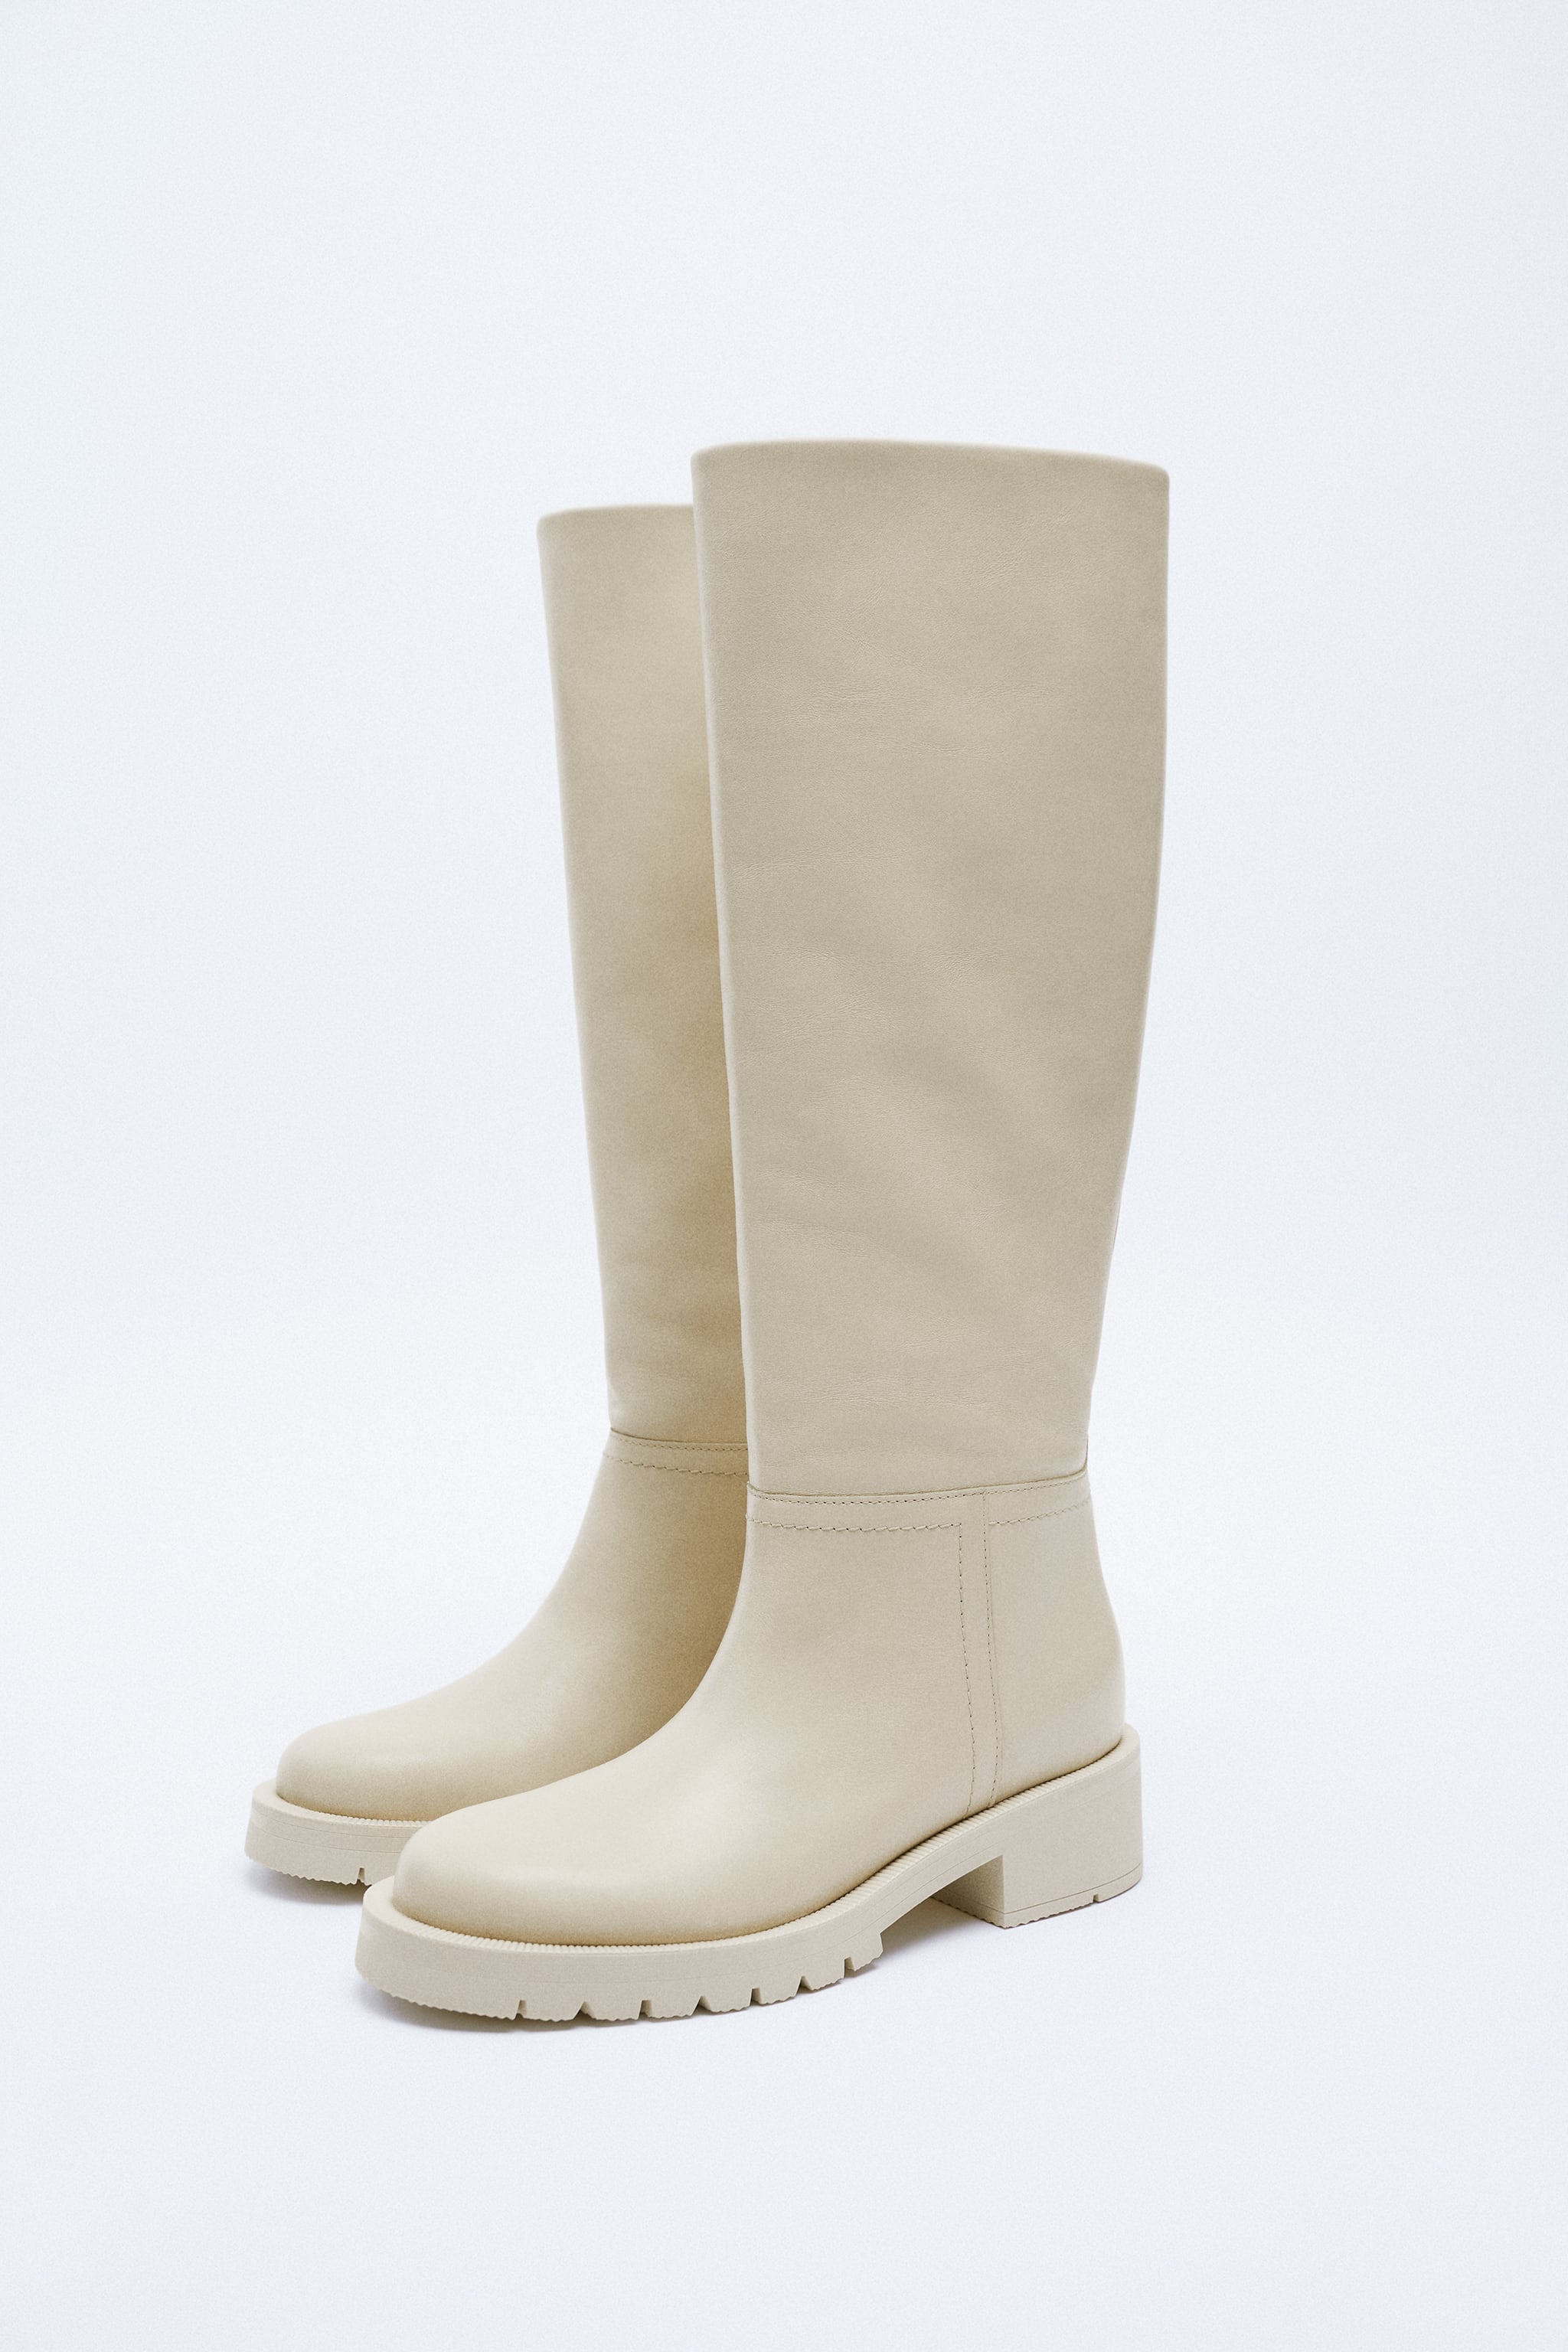 Zara Flat Knee High Boots